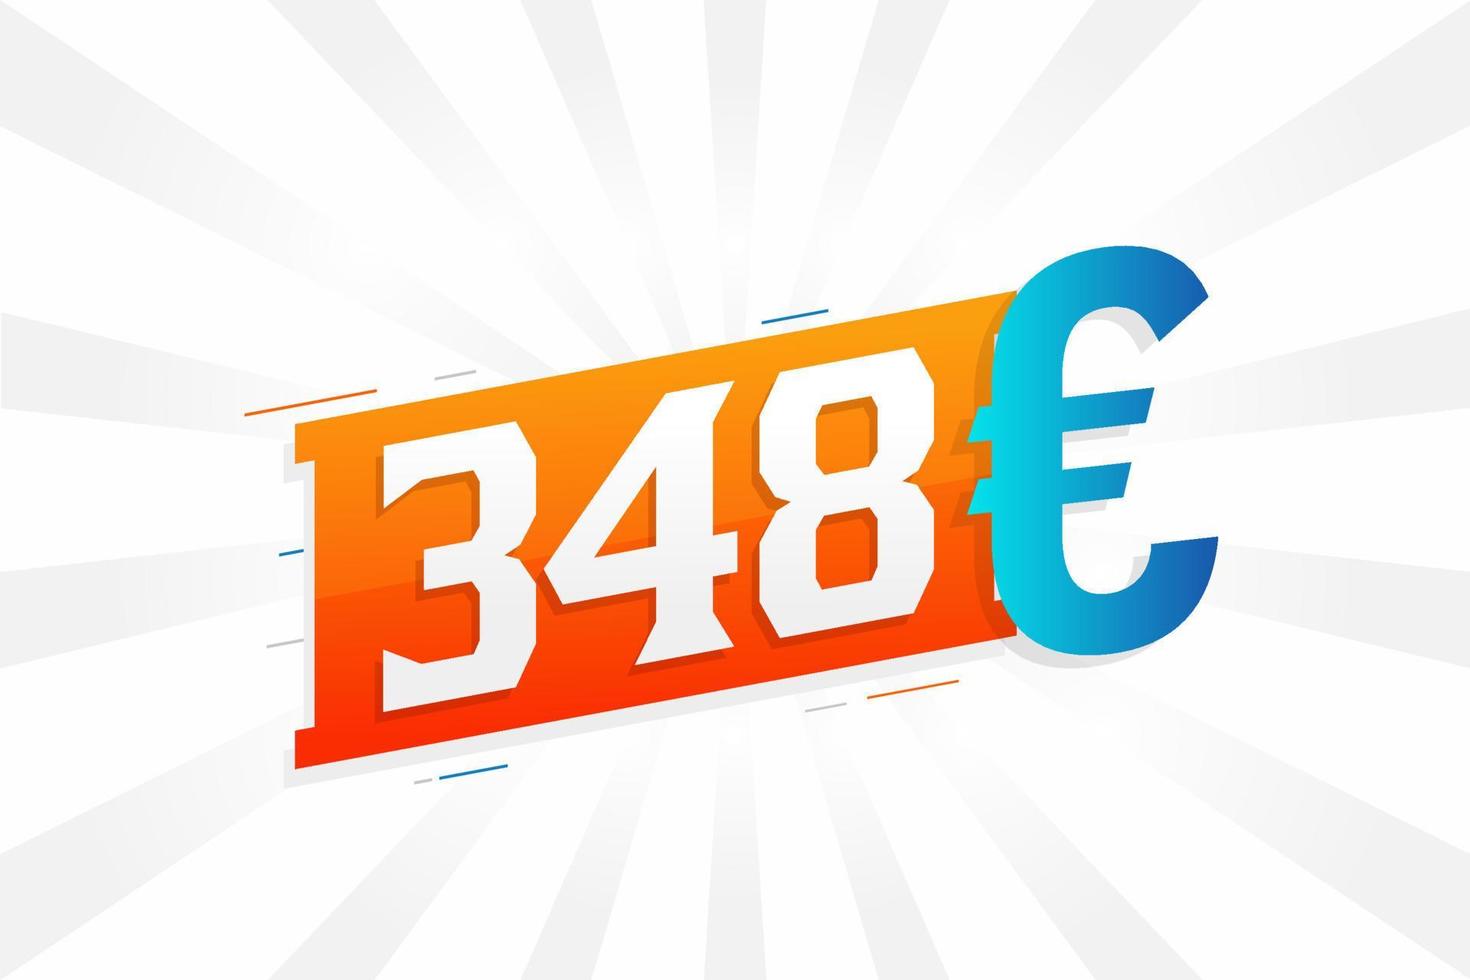 Symbole de texte vectoriel de devise 348 euros. 348 euros vecteur de stock d'argent de l'union européenne